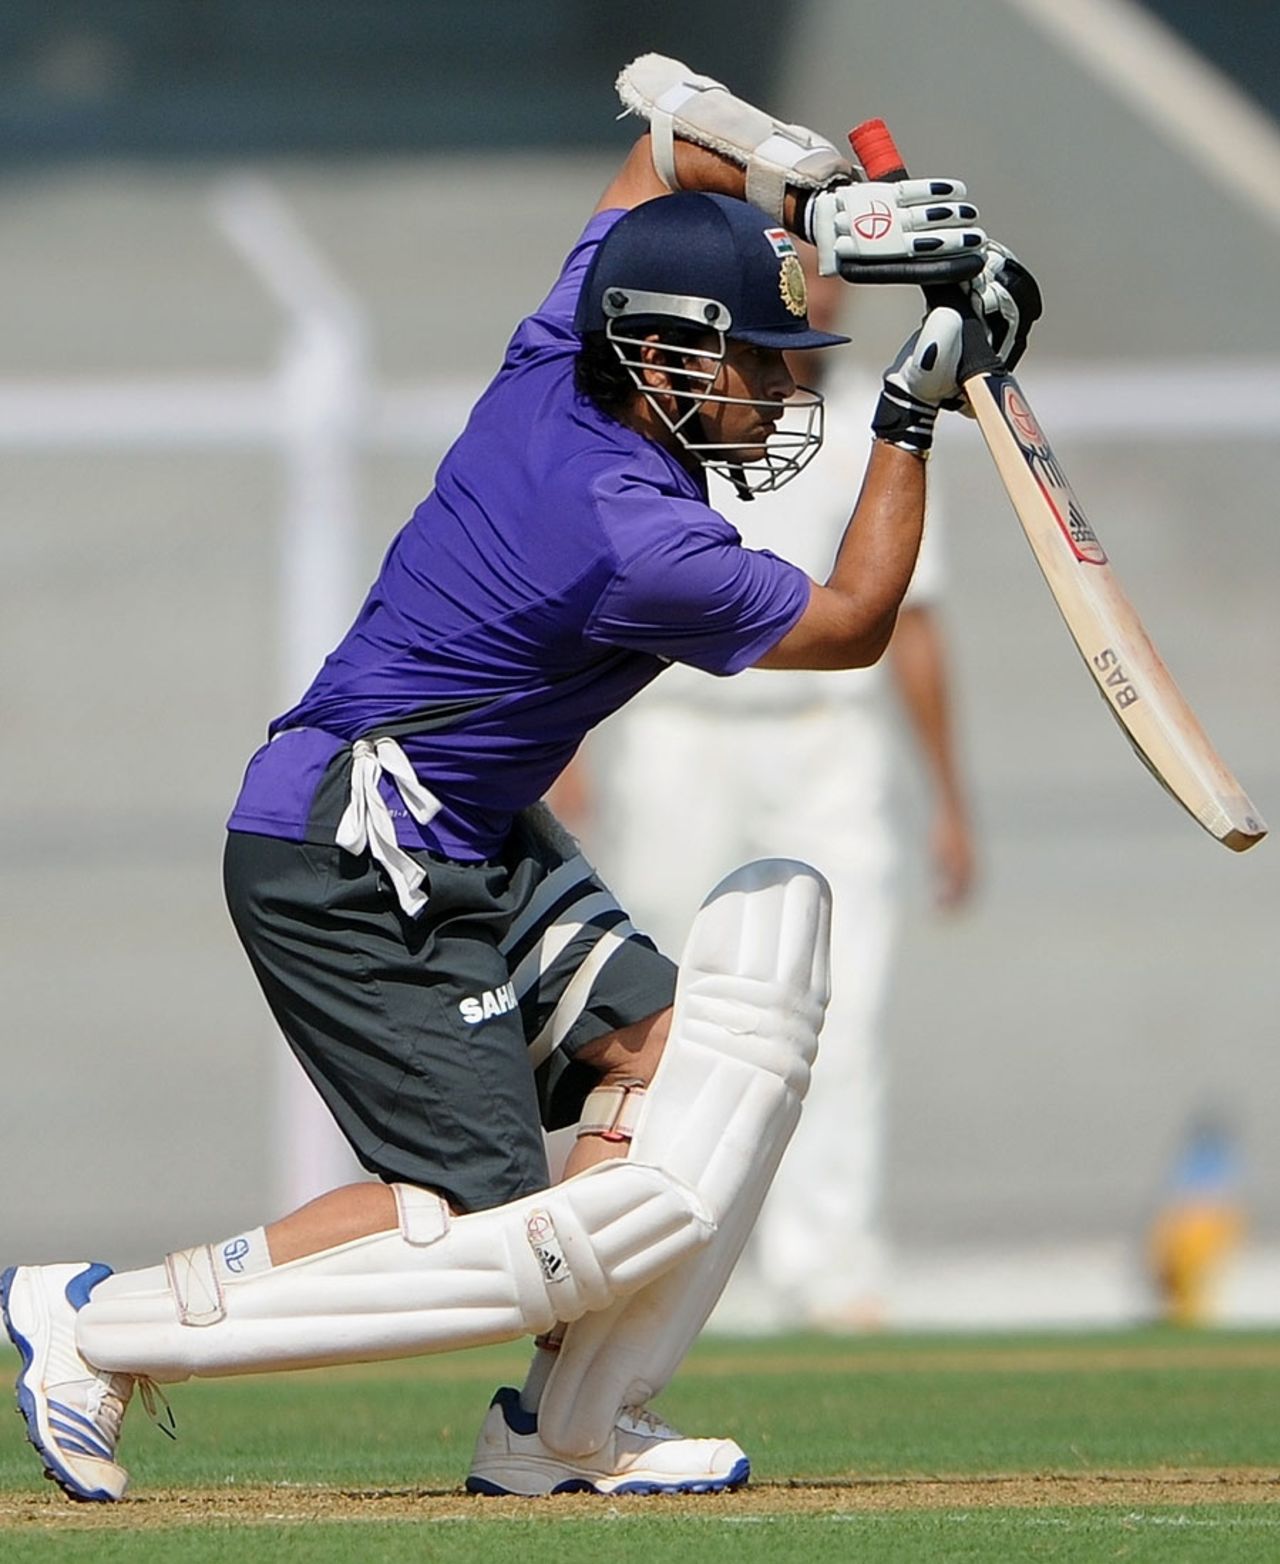 Sachin Tendulkar has a bat, Mumbai, November 10, 2012